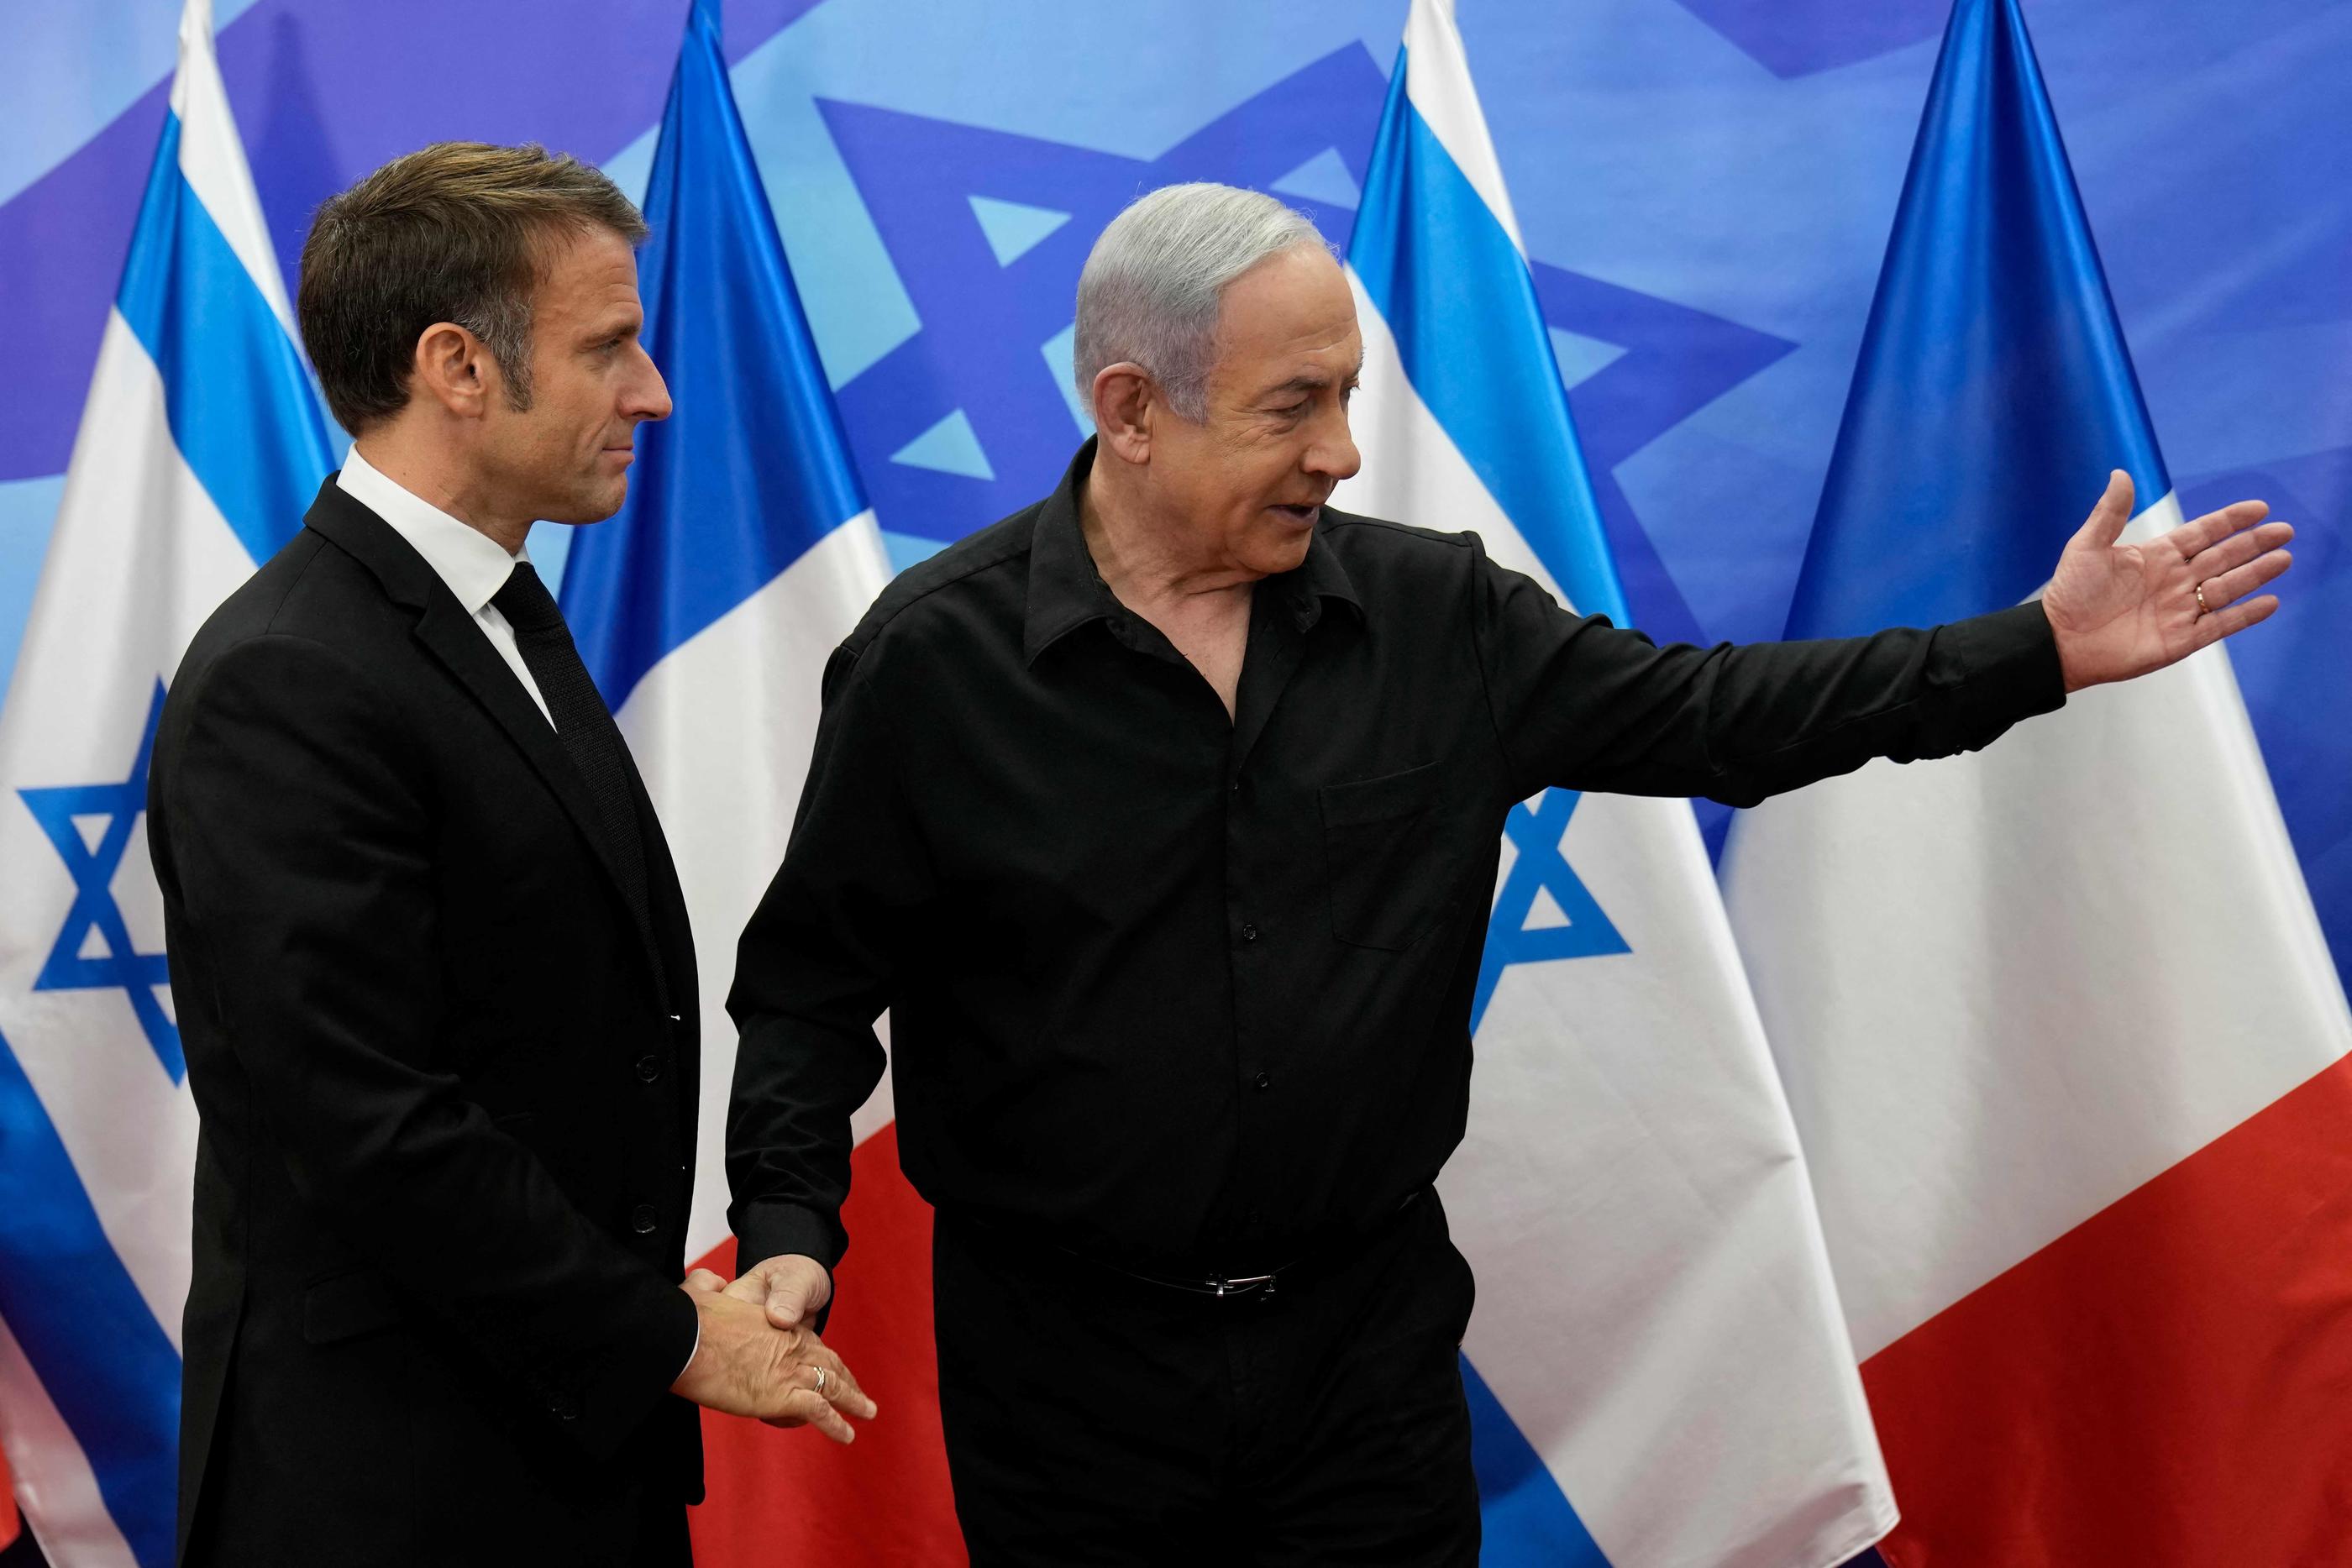 Durant sa visite au Proche-Orient, Emmanuel Macron, ici avec Benyamin Netanyahou, doit jongler entre l’expression d’une solidarité sans faille avec Israël meurtri et la nécessité de redonner un espoir de solution politique aux Palestiniens. AFP/Christophe Ena